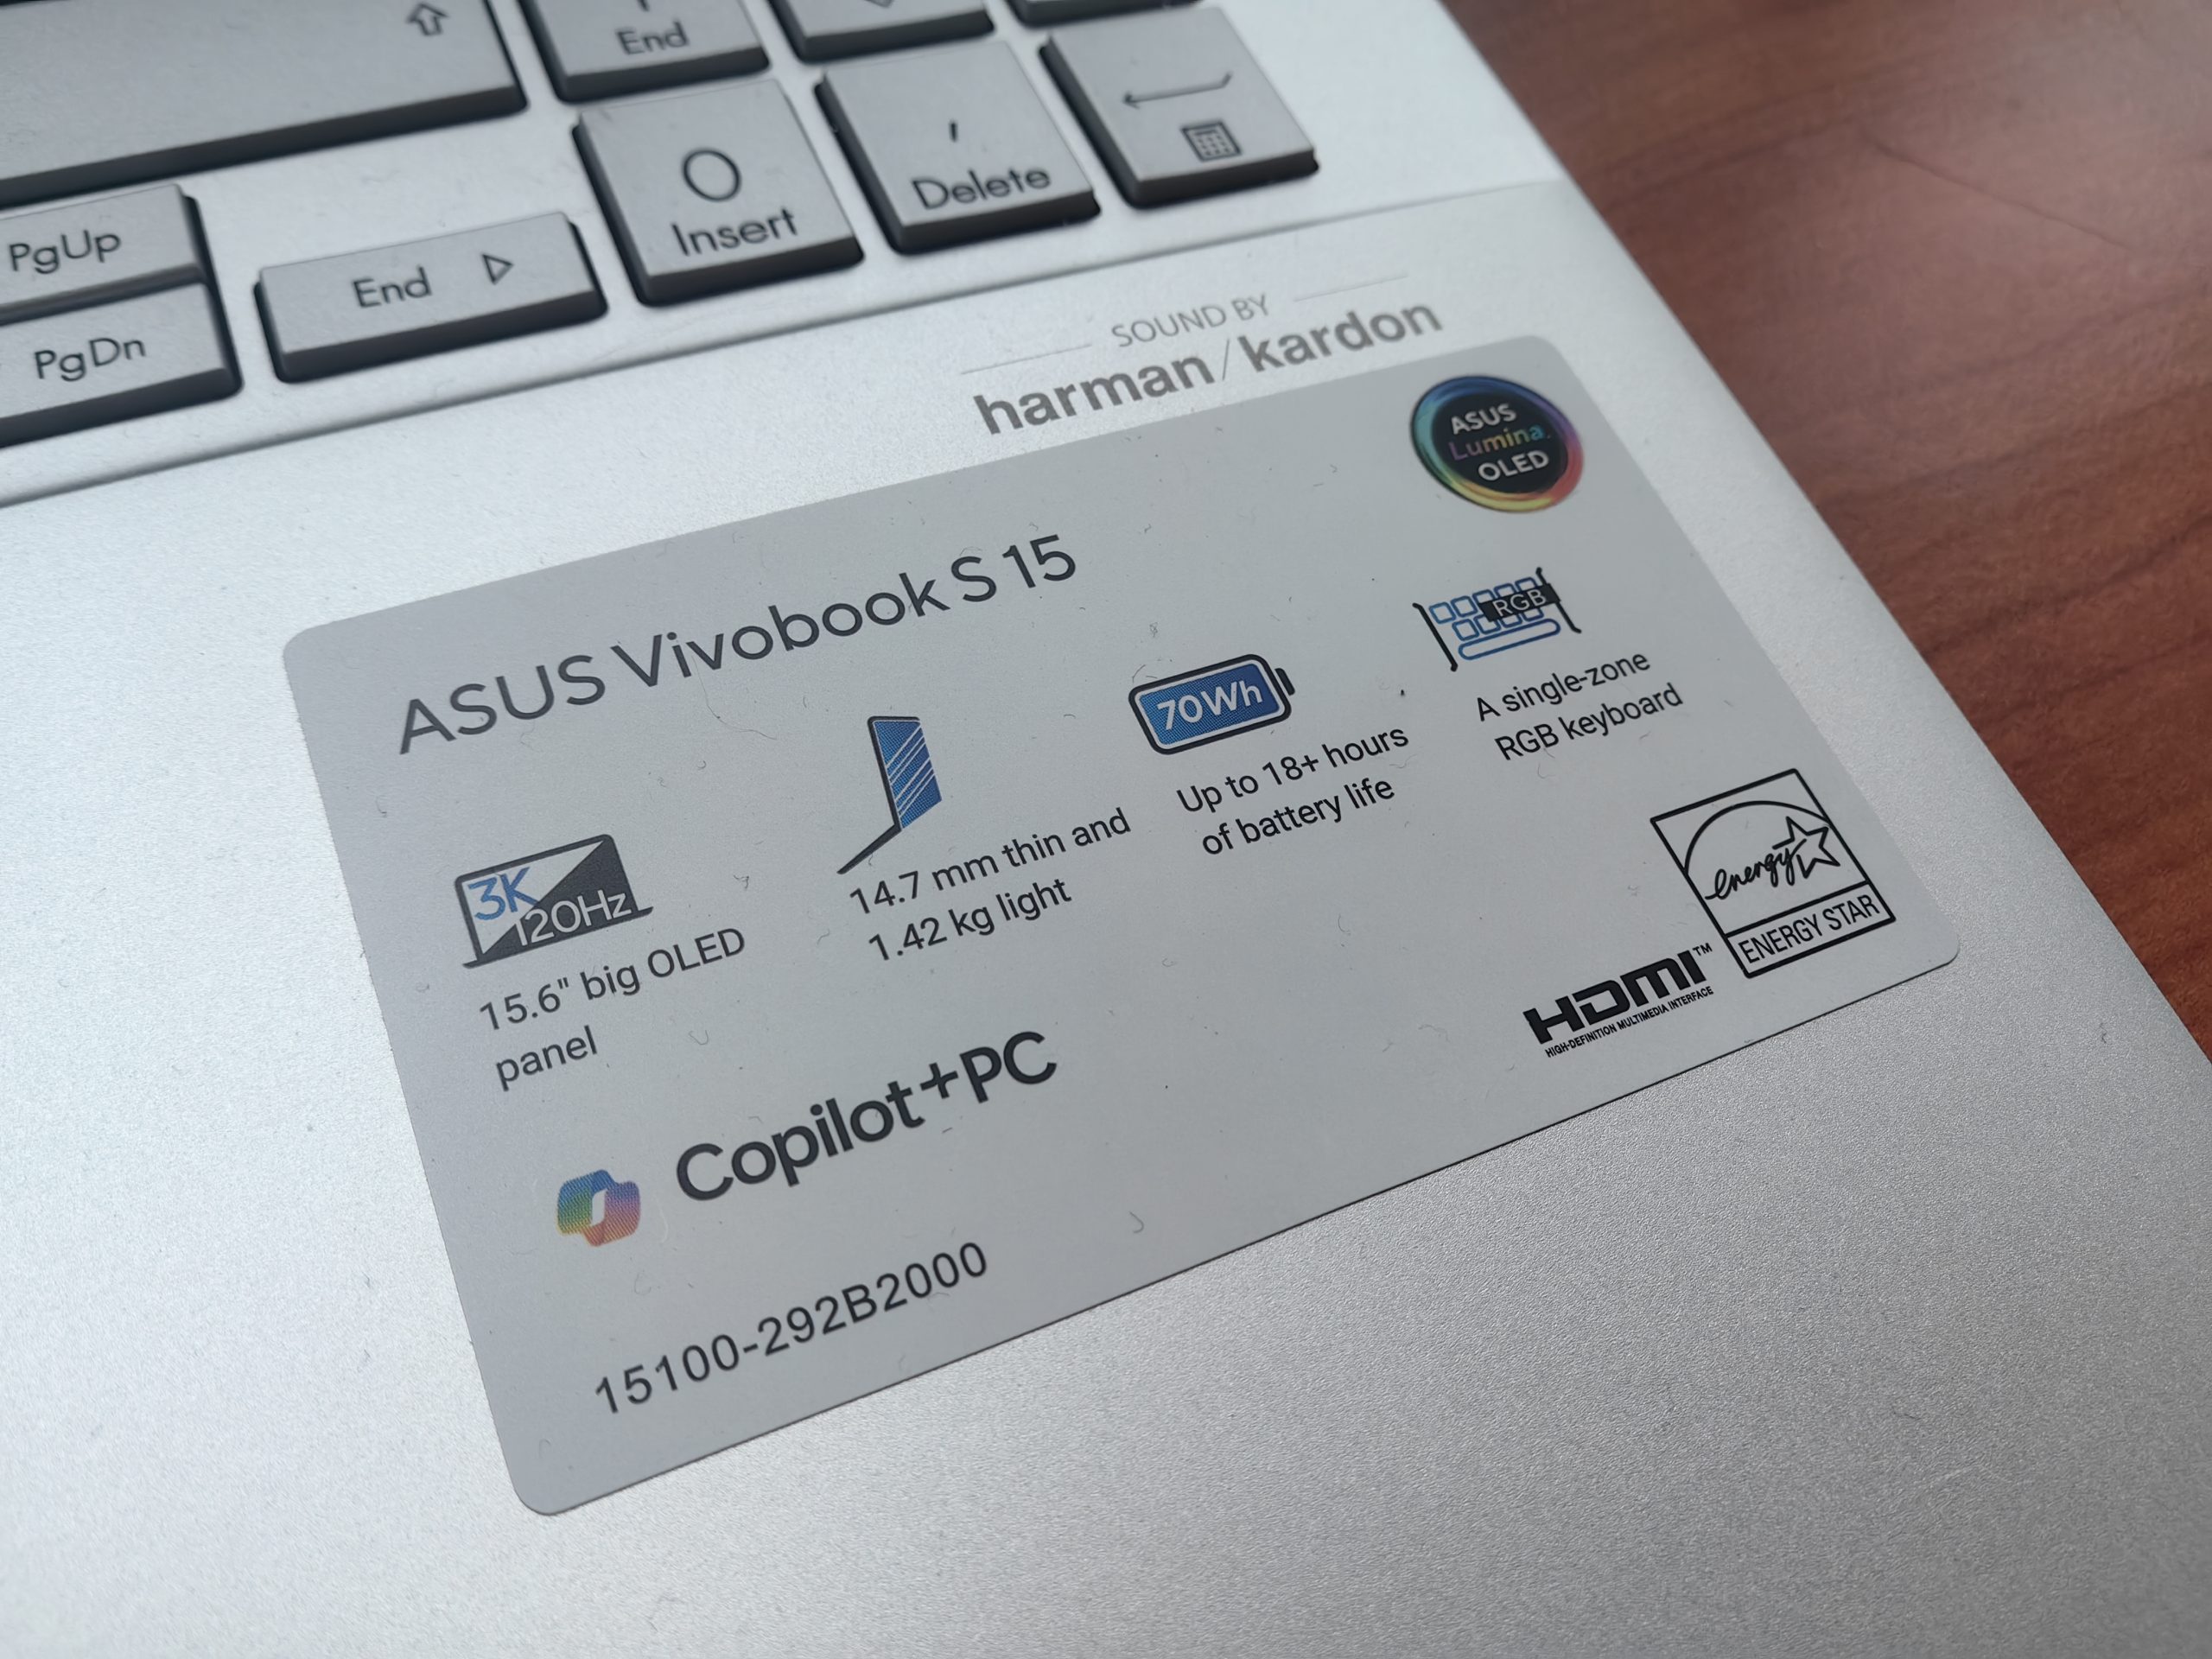 ASUS Vivobook S 15 fait partie de la gamme Copilot+